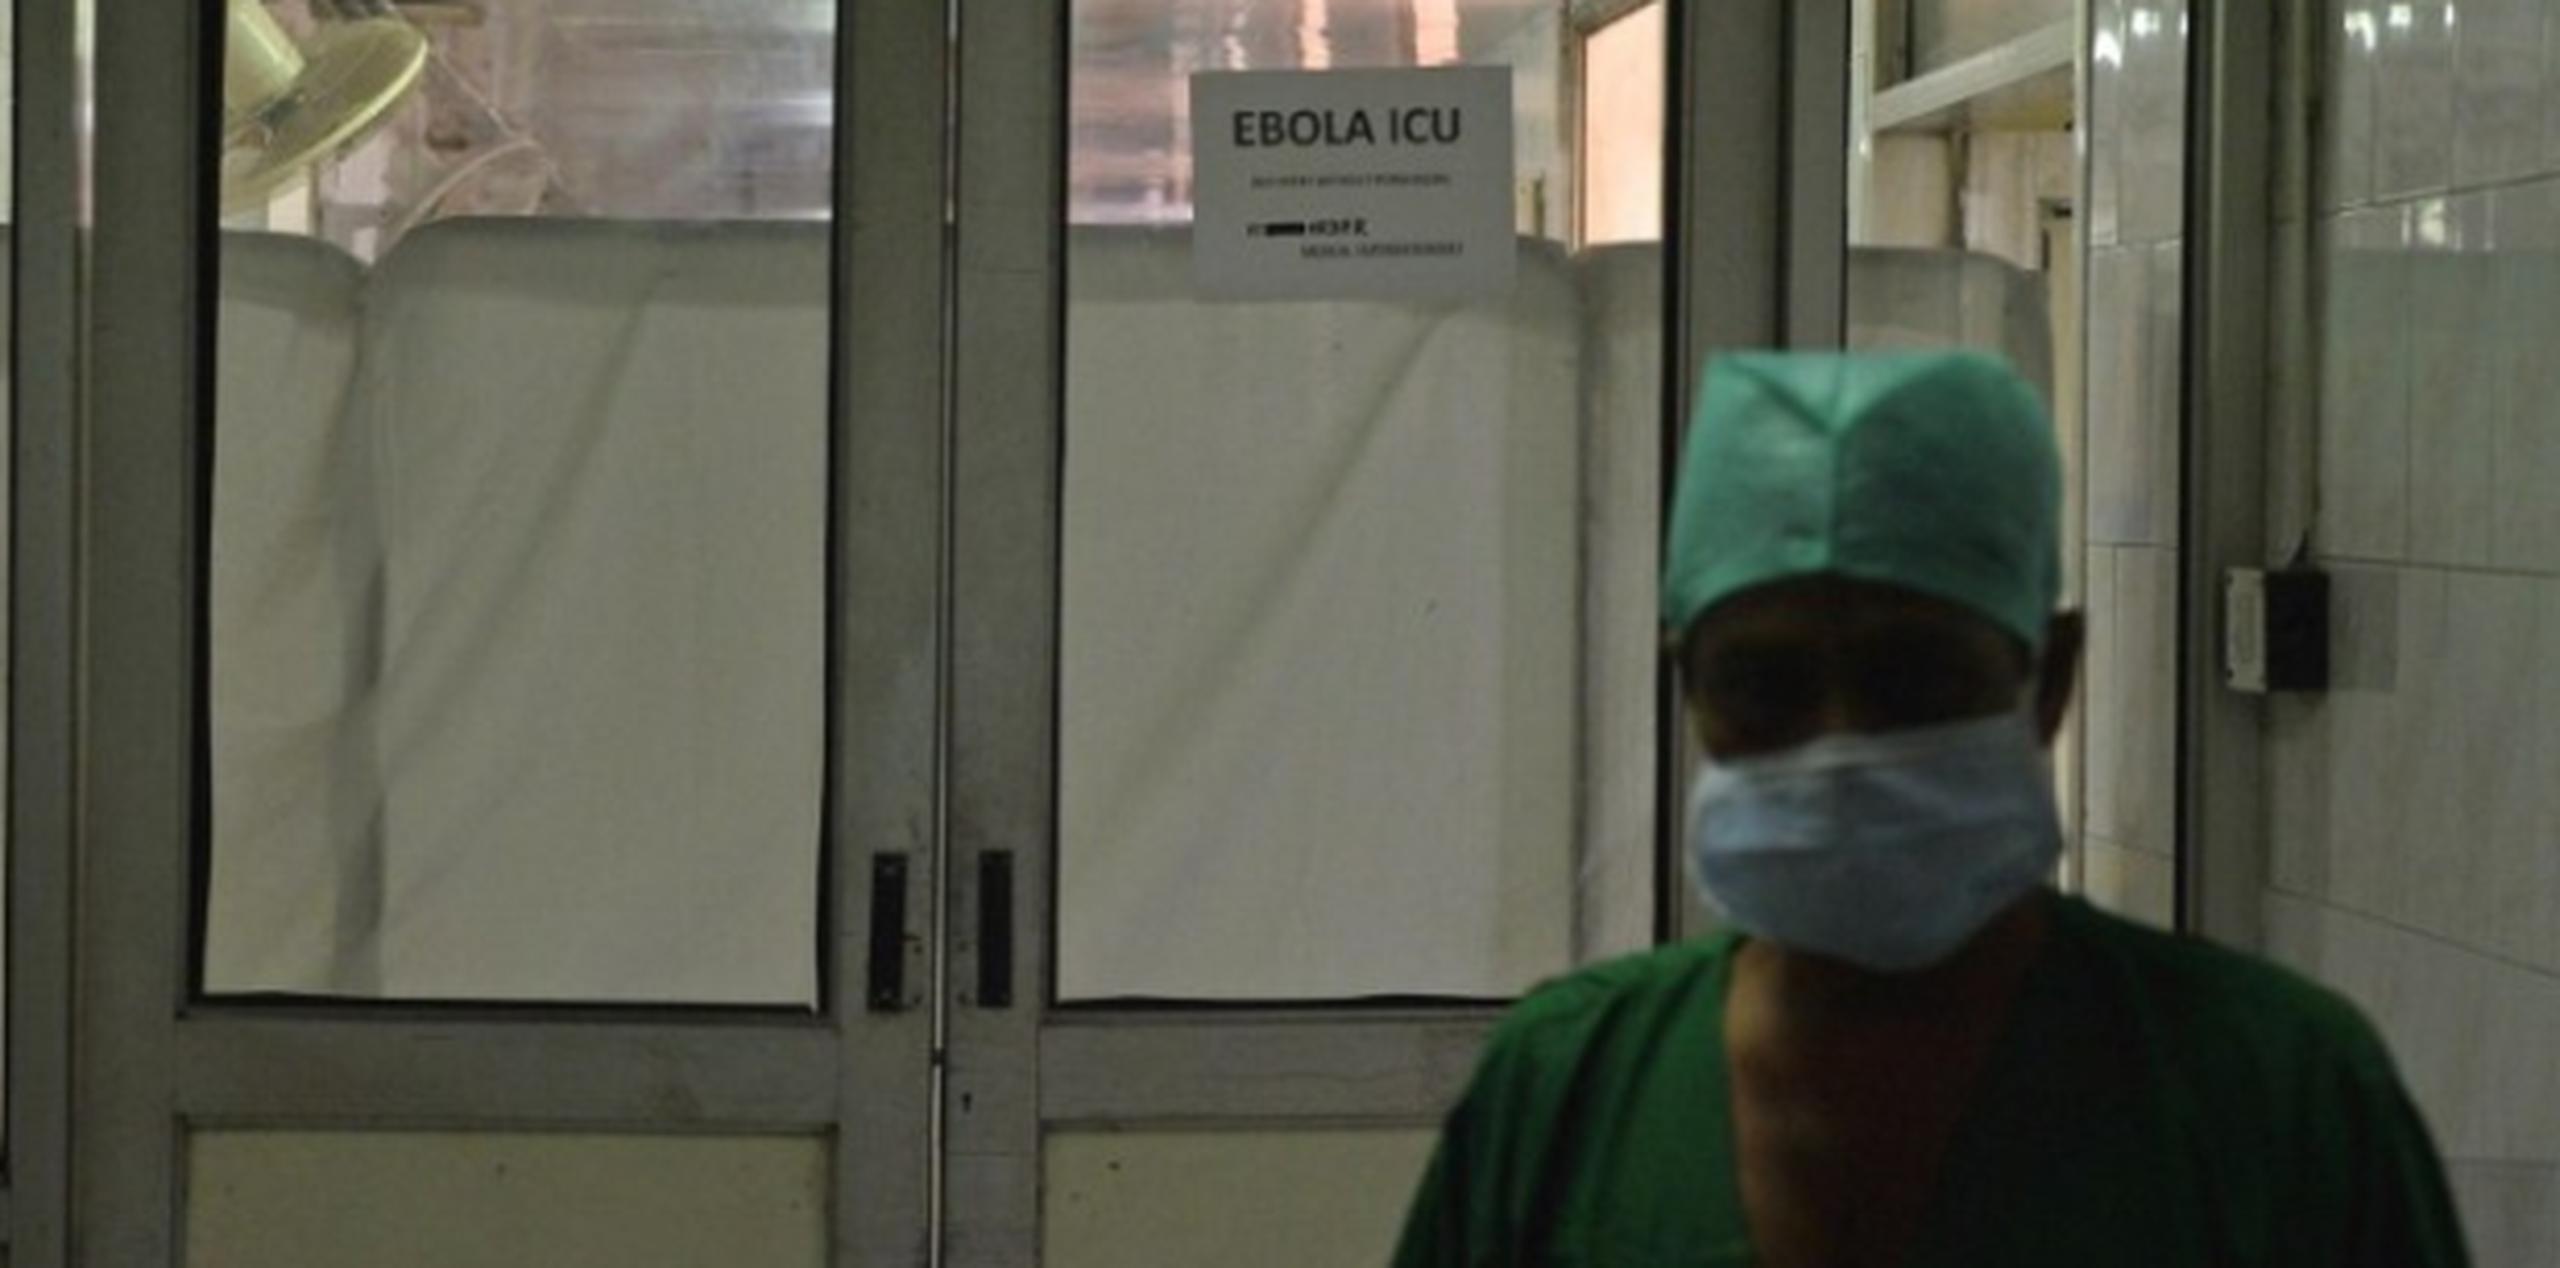 Más de 10.000 personas se han contagiado del ébola en el brote iniciado el pasado marzo, según la Organización Mundial de la Salud. (Archivo)